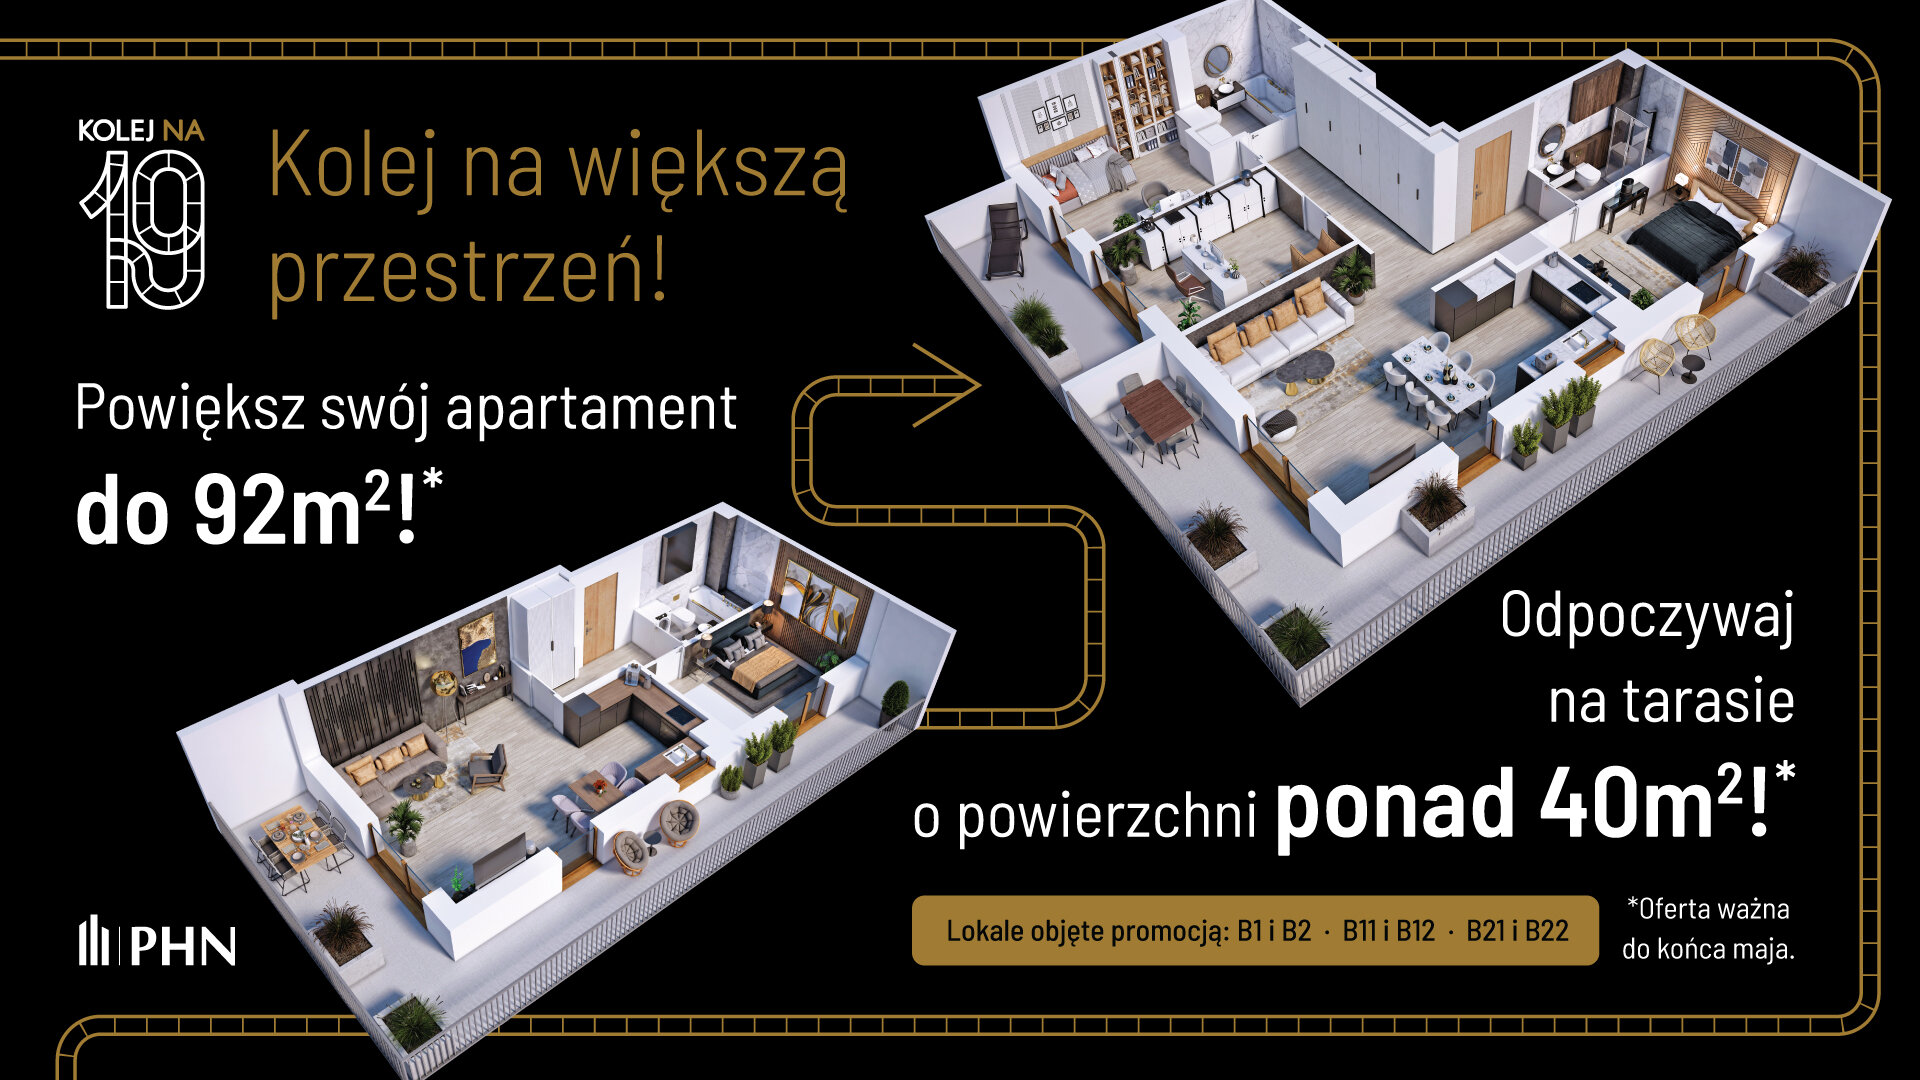 Wiosenna promocja w KOLEJ NA 19 - Apartament, 3 pokoje, Warszawa,55.79 m²,1 032 784 zł